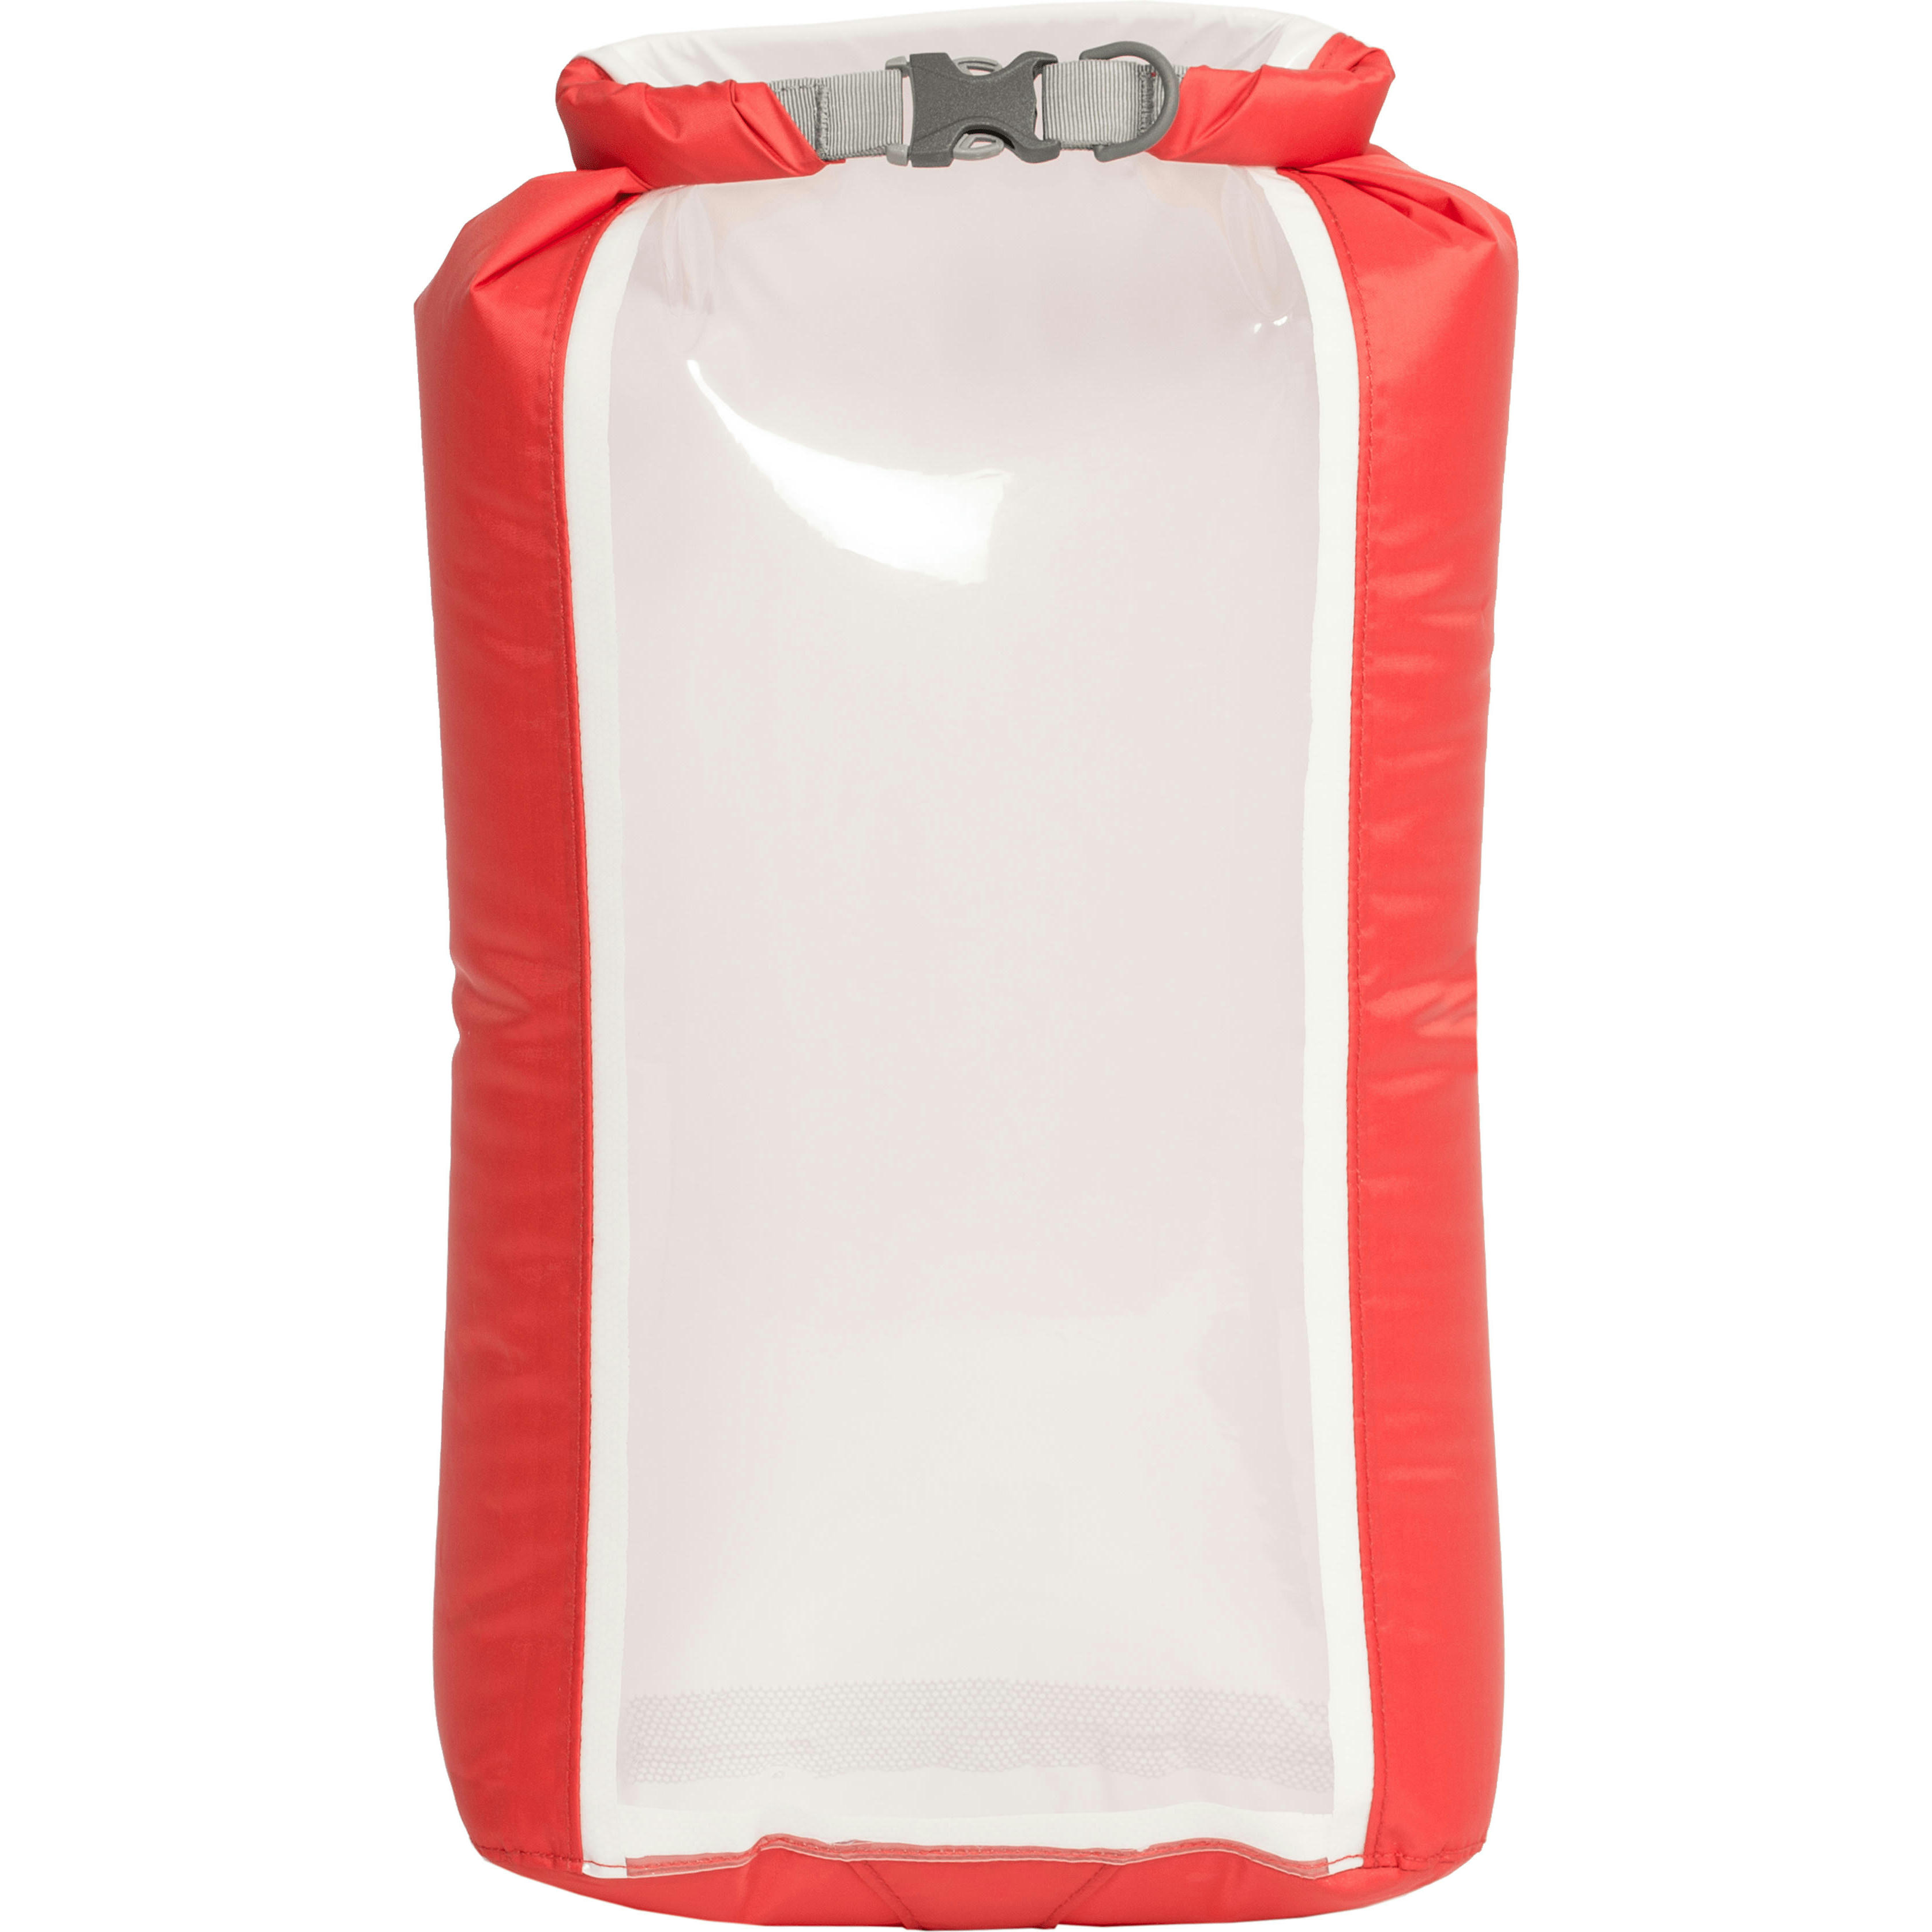 Гермомешок Exped Fold Drybag CS M red красный фото 1